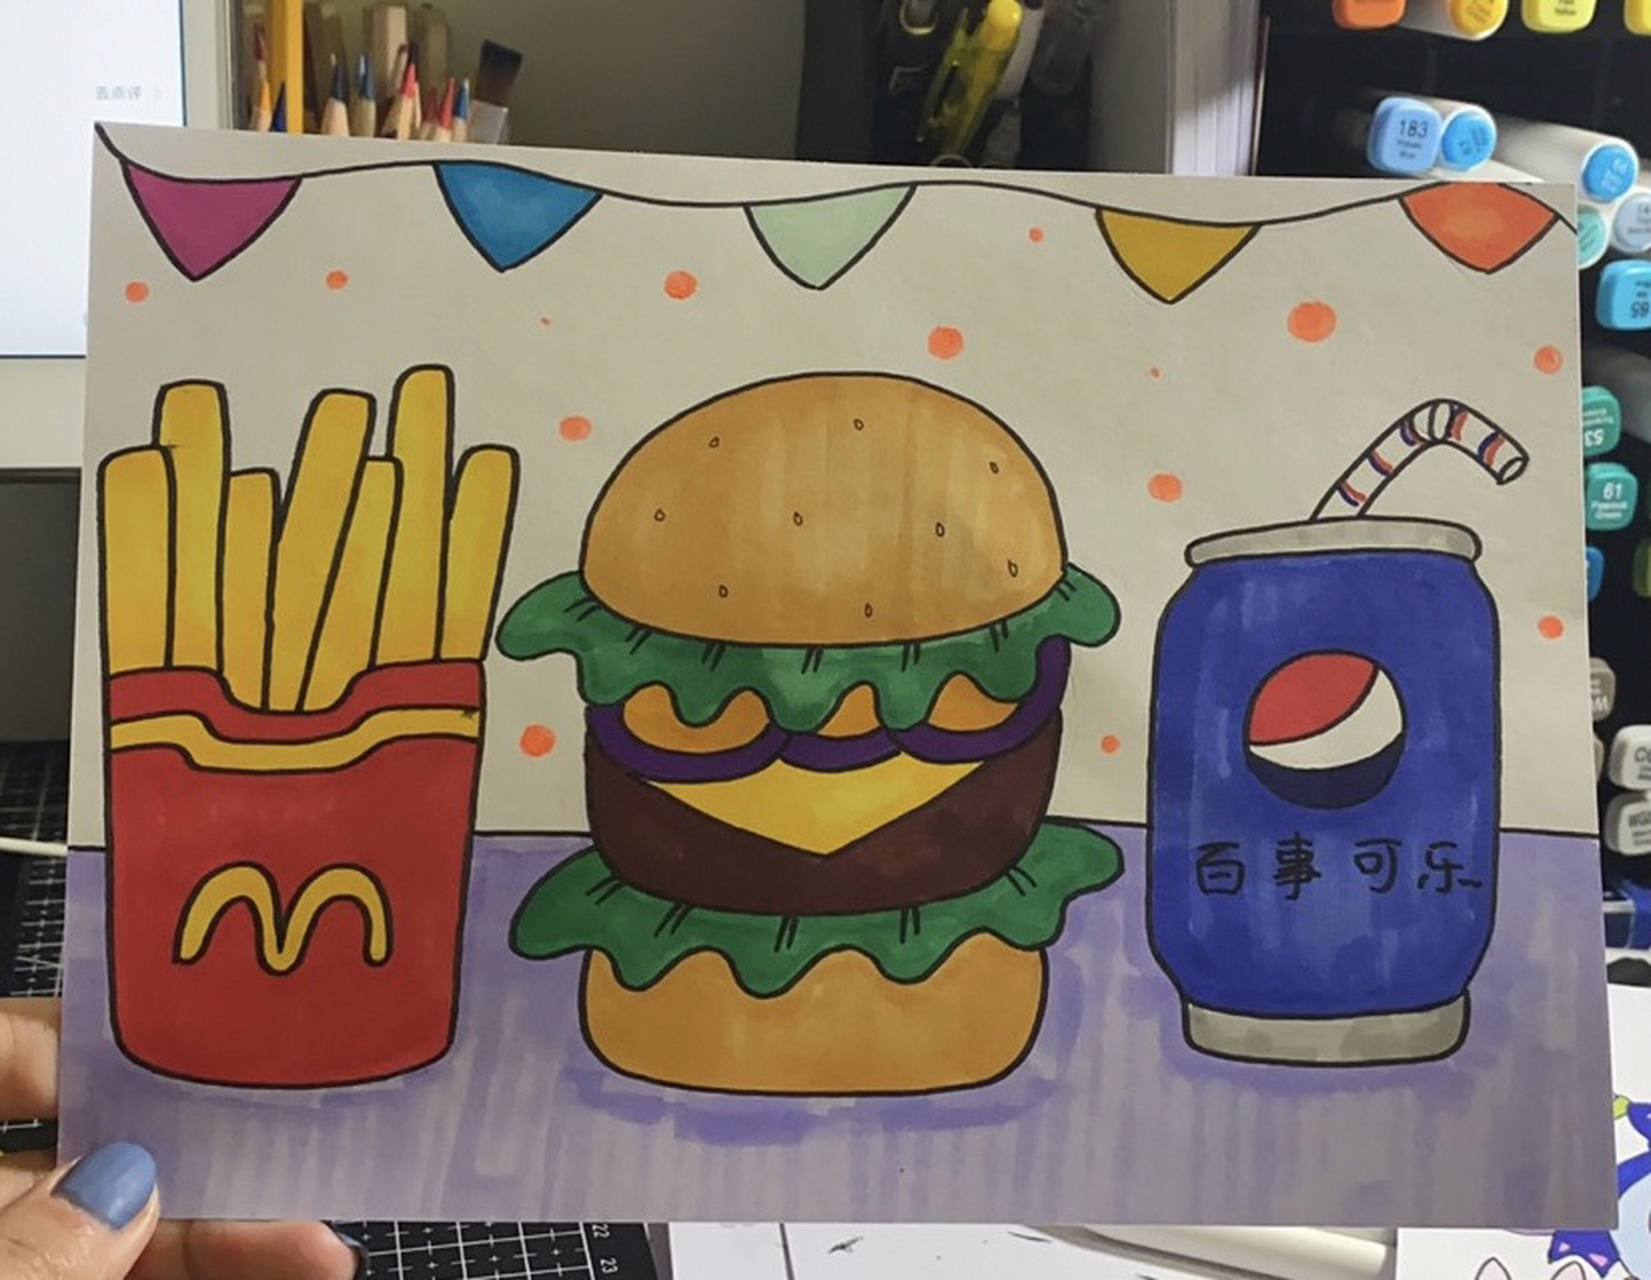 吃汉堡简笔画彩色图片